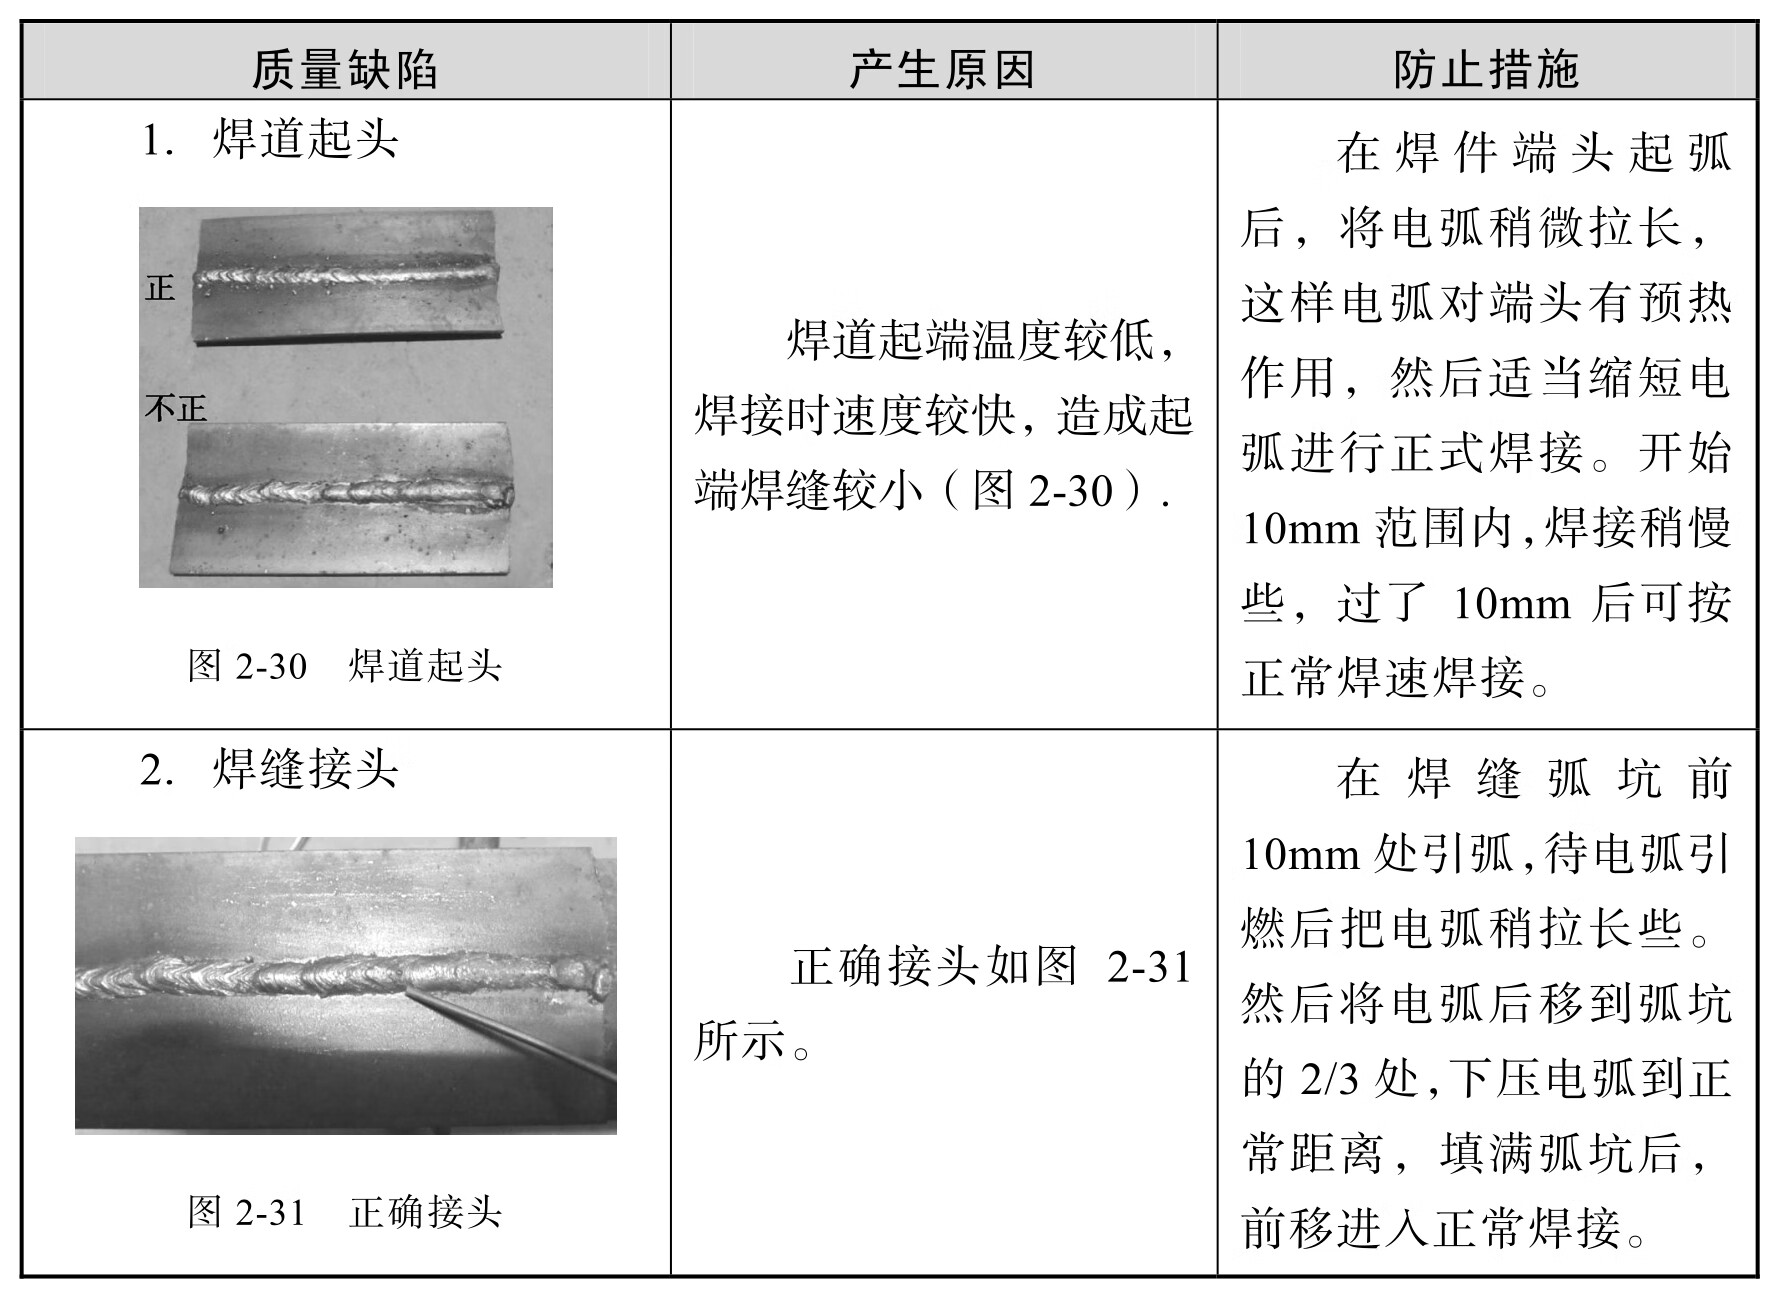 汽车车身焊接pdf/doc/txt格式电子书下载